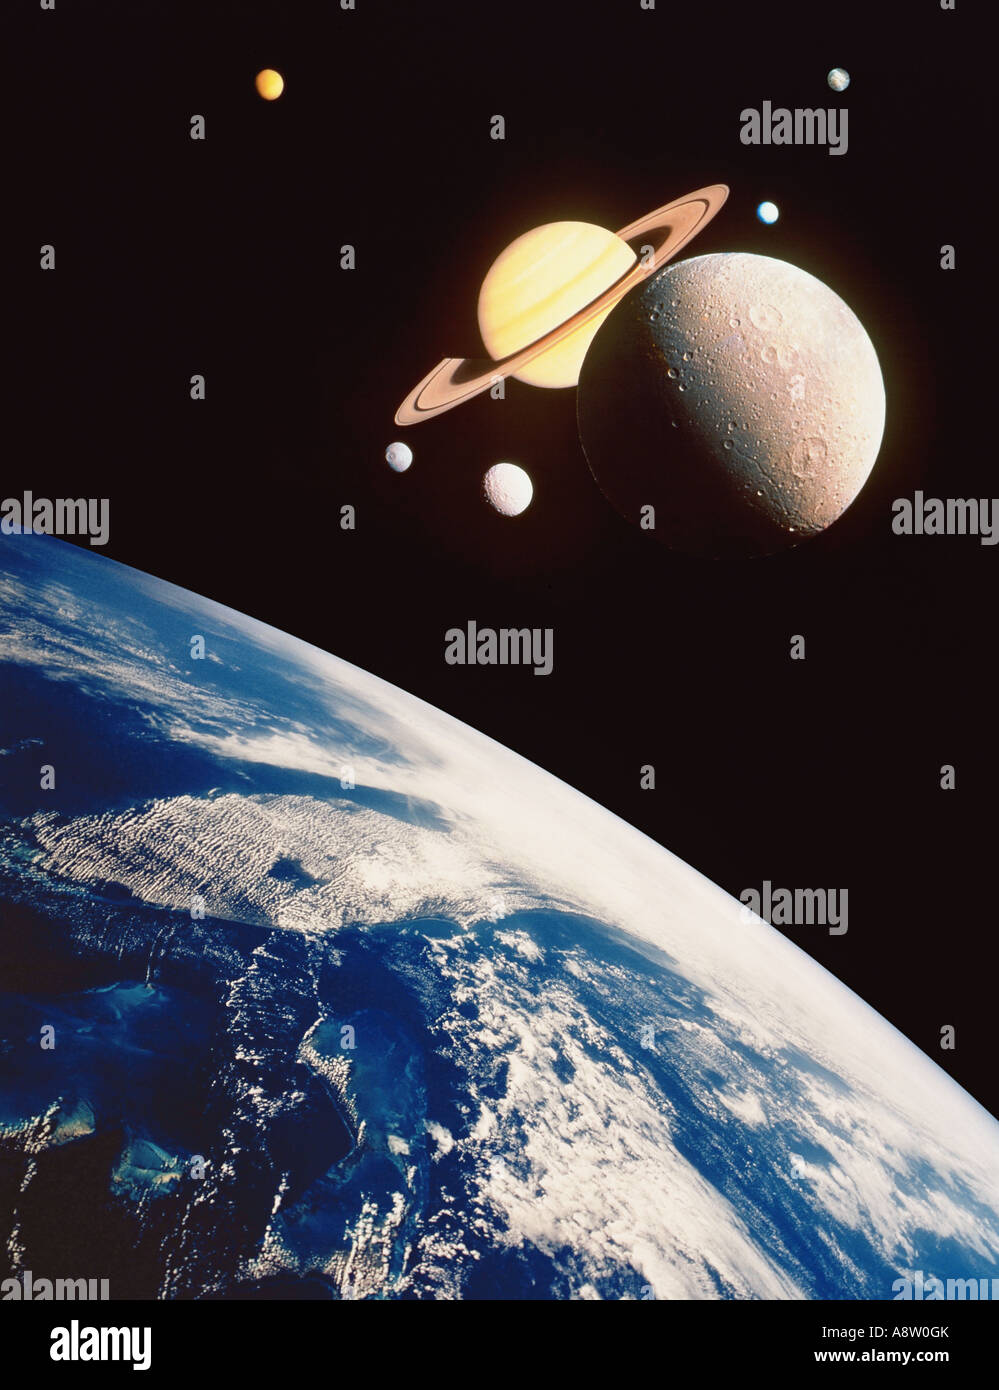 Montage Bild des Planeten Erde in den Vordergrund falsche Nähe mit dem Planeten Saturn und Mond des Saturns. Stockfoto